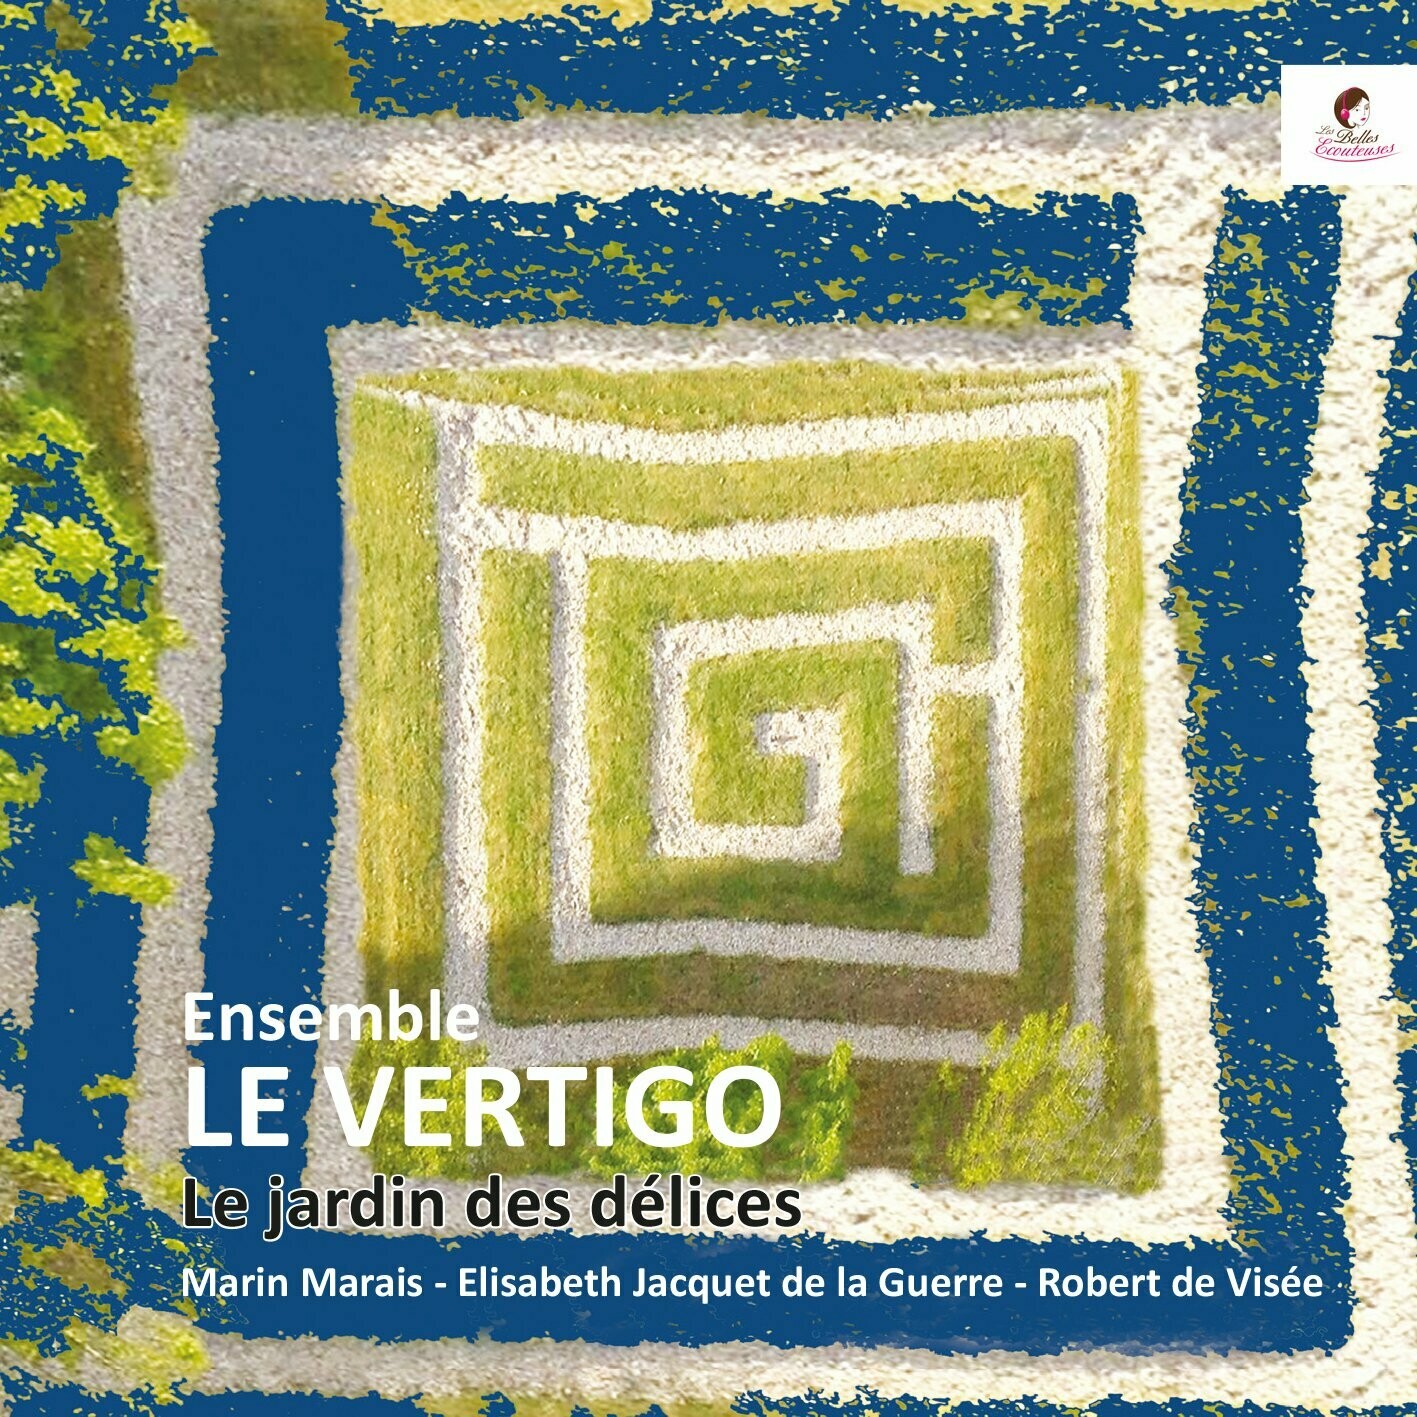 Le Jardin des délices/Ensemble Le Vertigo (disques vinyles)